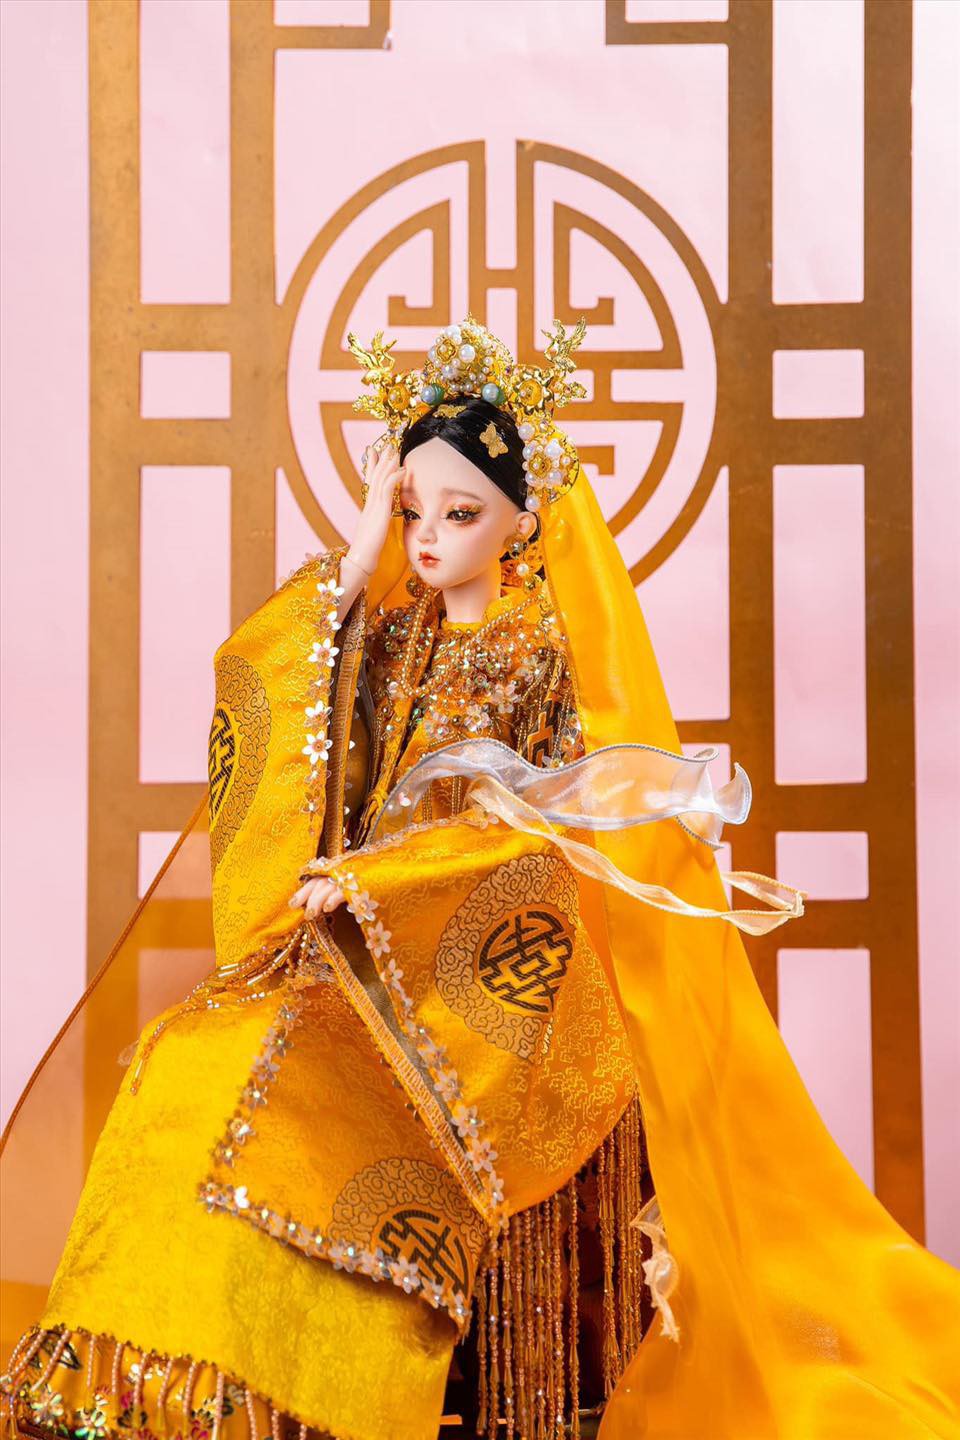 Cùng ngắm nhìn bộ sưu tập BÚP HOẠ TỨ PHỦ đặc sắc nhằm tôn vinh nét đẹp văn hoá Tín ngưỡng thờ Mẫu